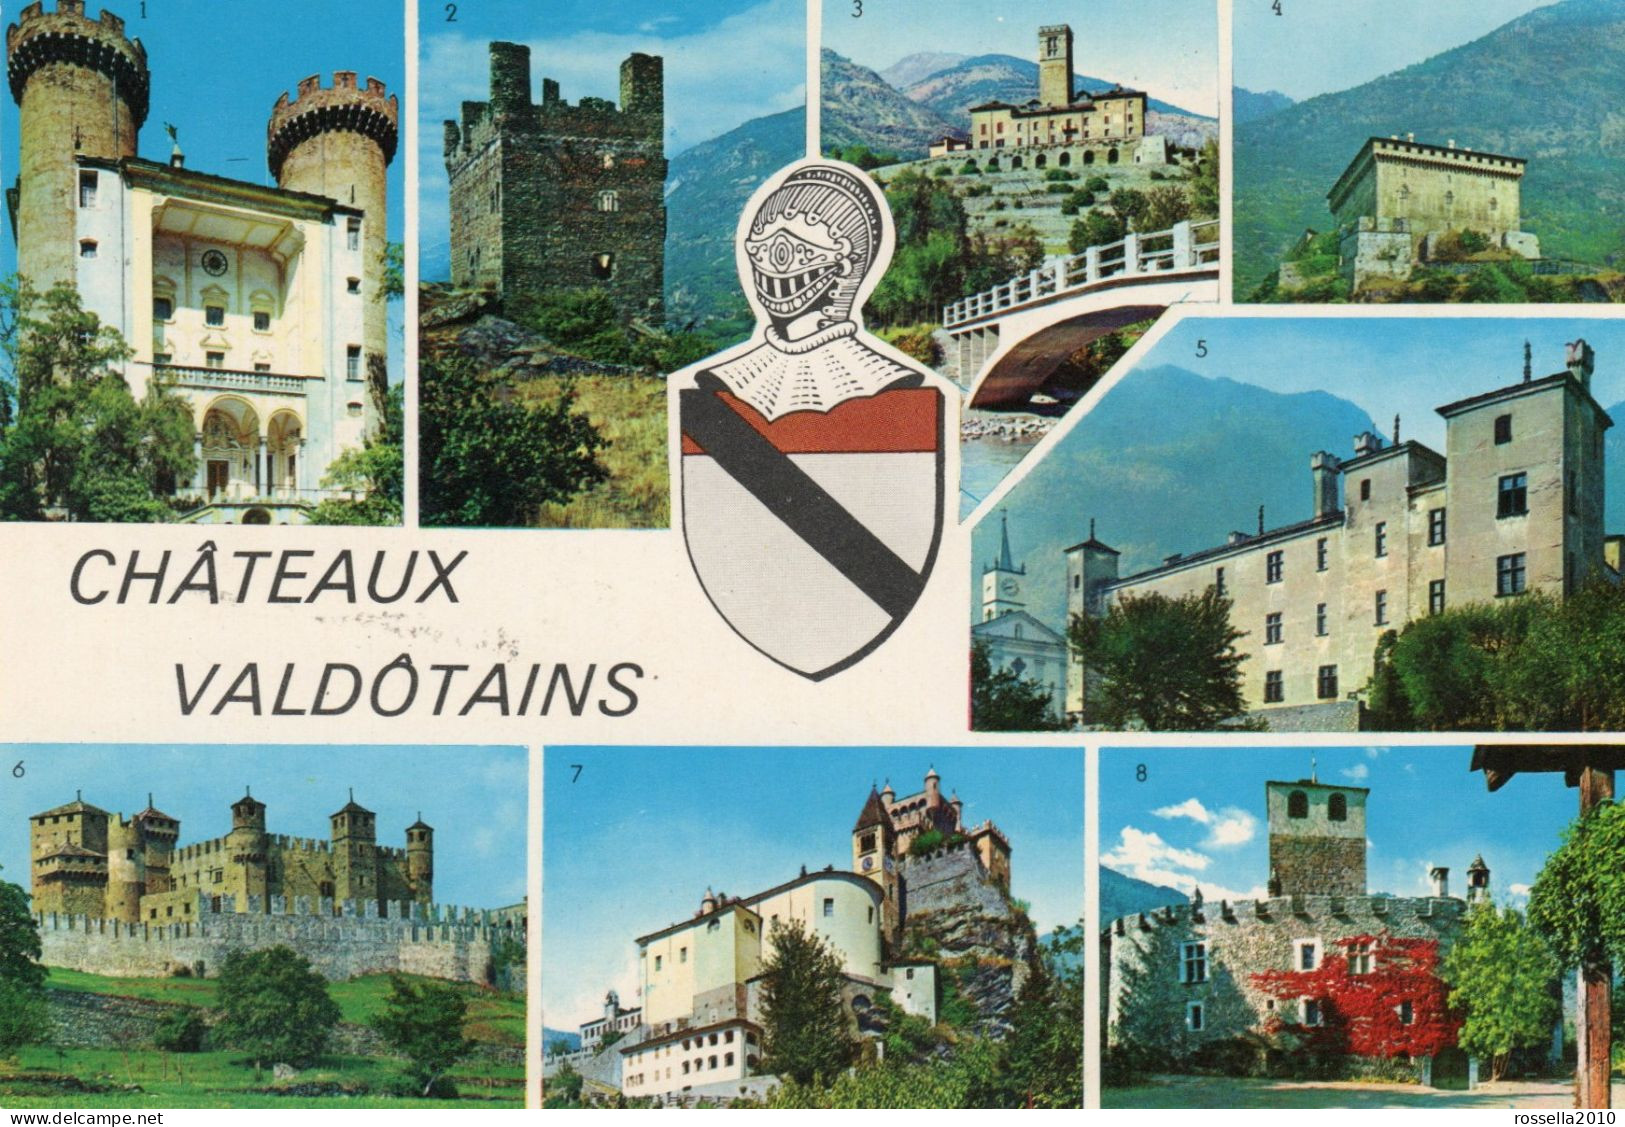 CARTOLINA 1975 ITALIA VALLE D' AOSTA CASTELLI CHATEAU VALDOTAINS SALUTI VEDUTINE Italy Postcard ITALIEN Ansichtskarten - Greetings From...